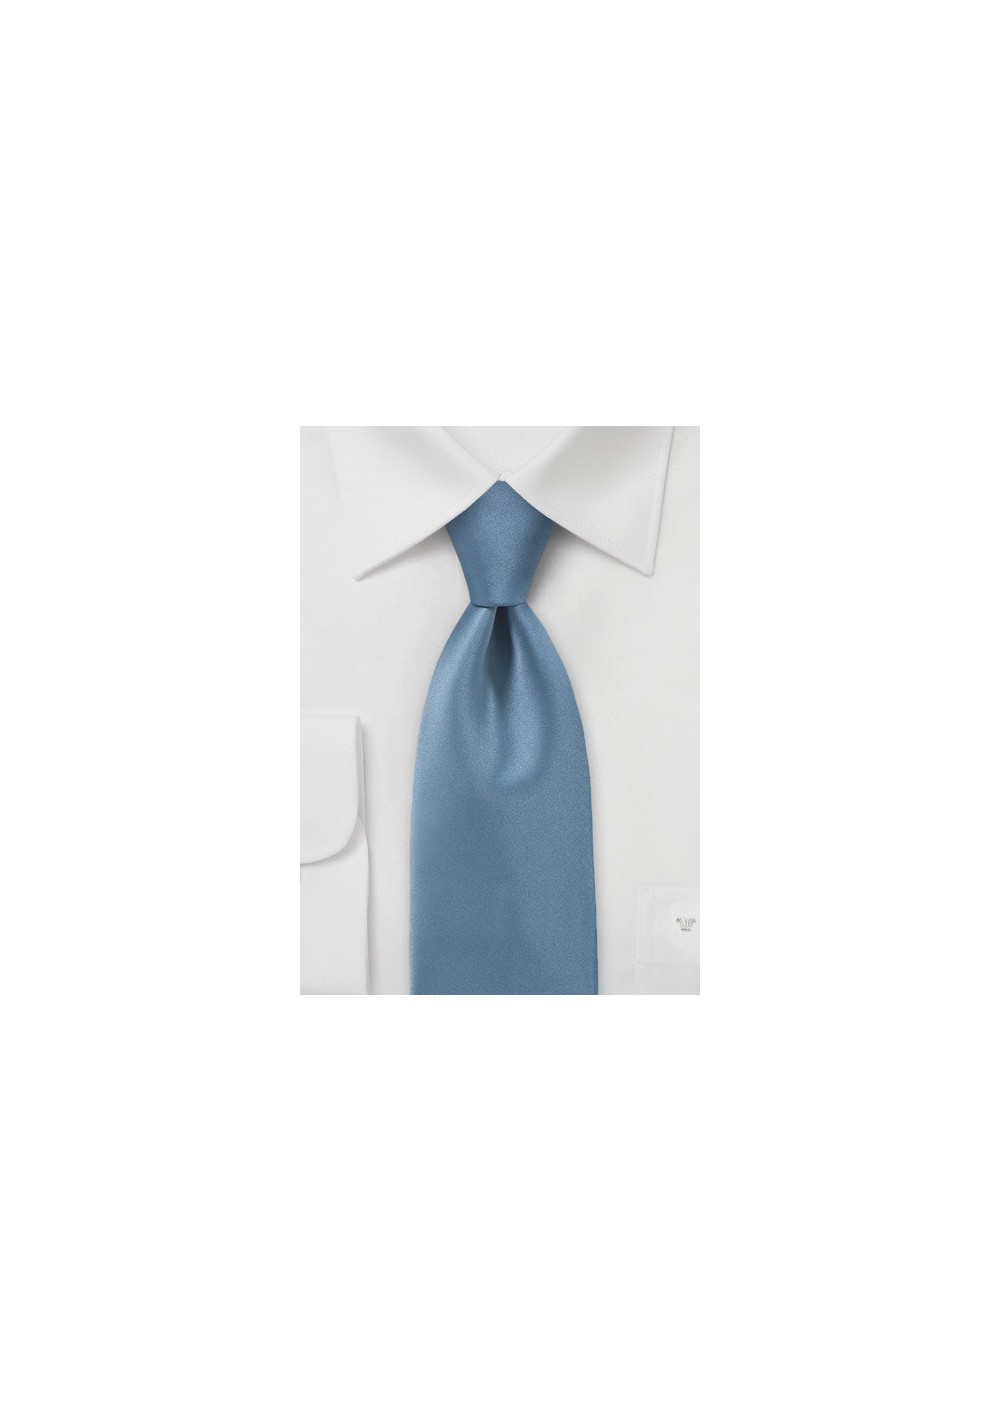 Mediterranean Blue Tie